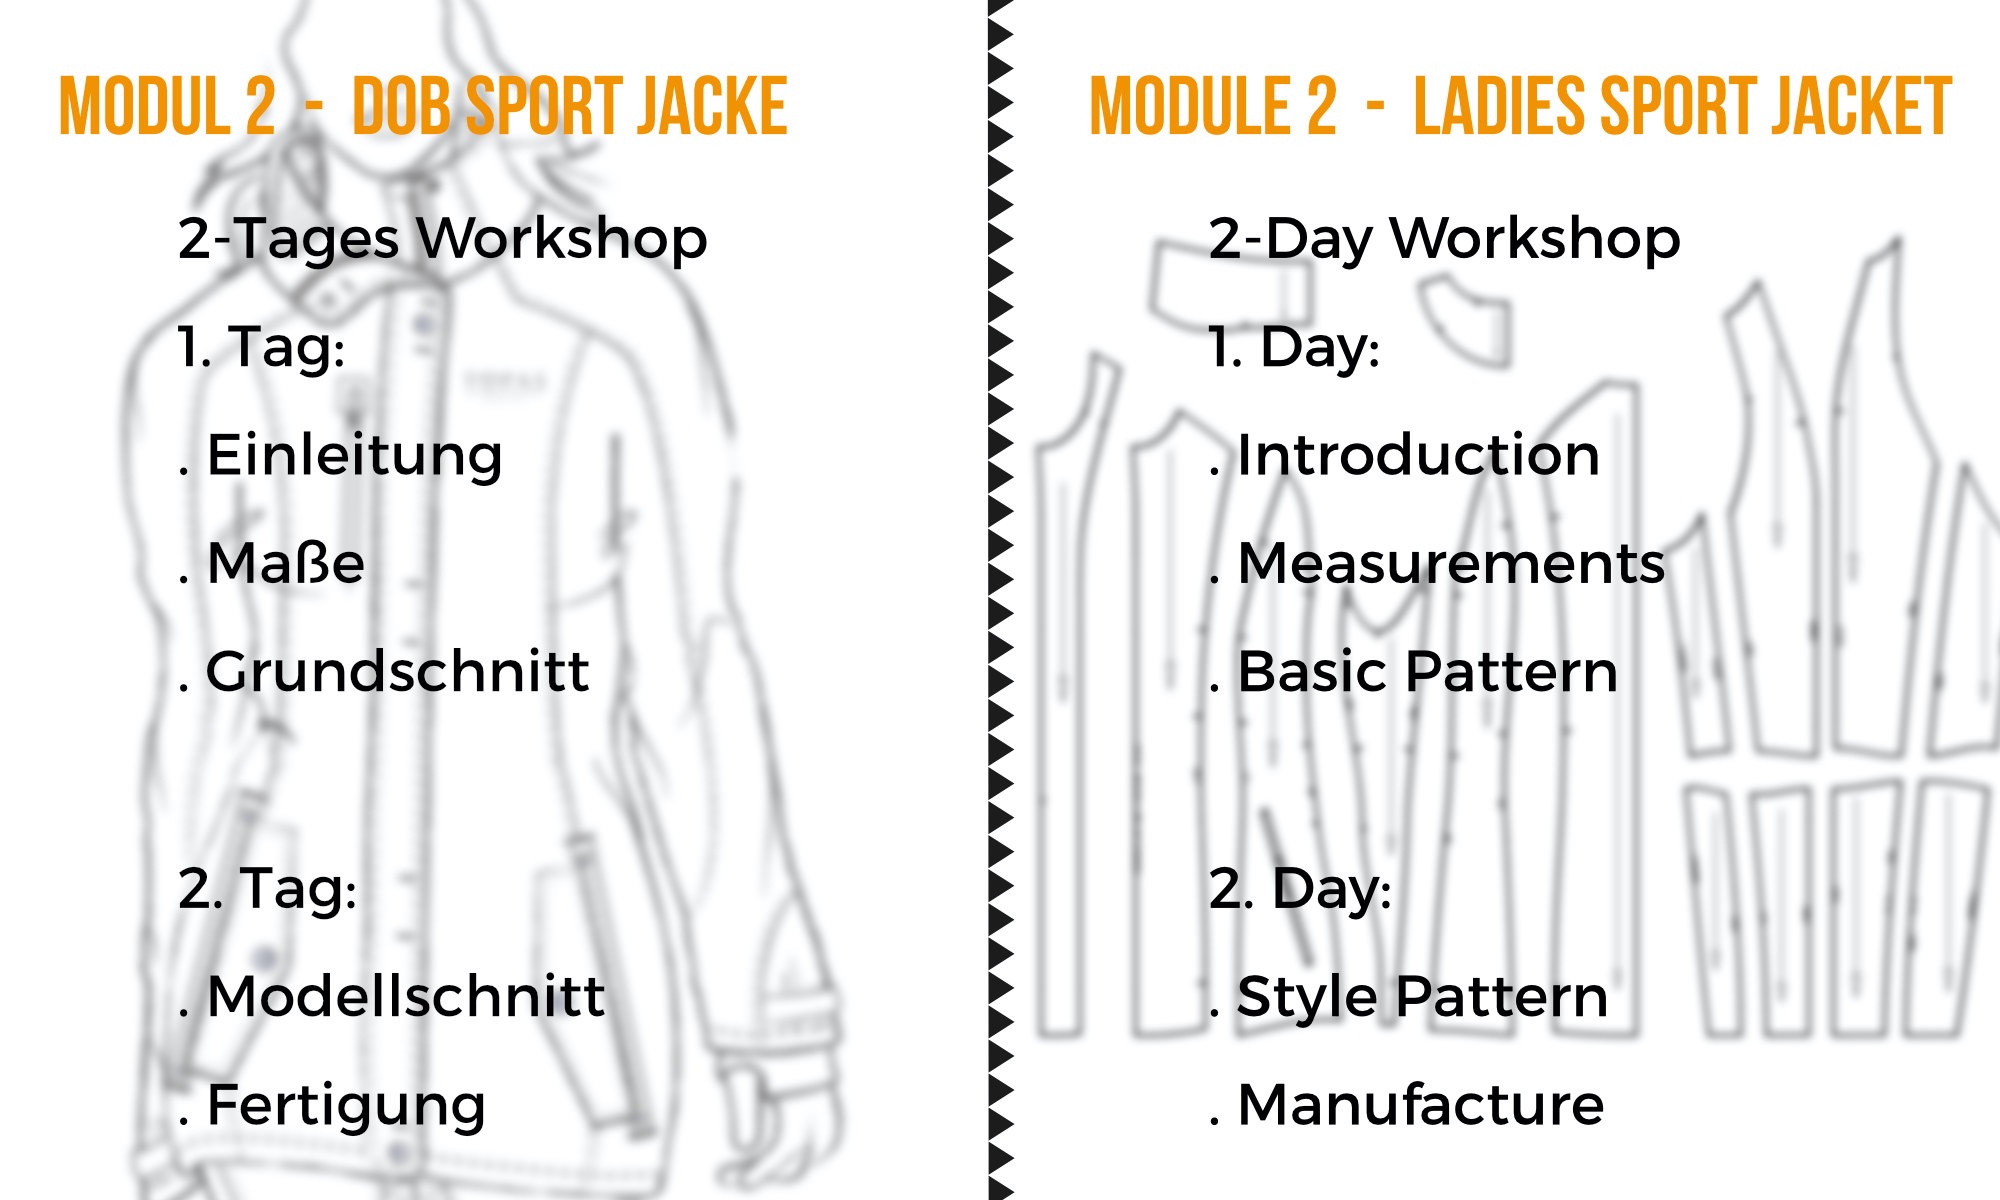 module 2 - ladies sport jacket